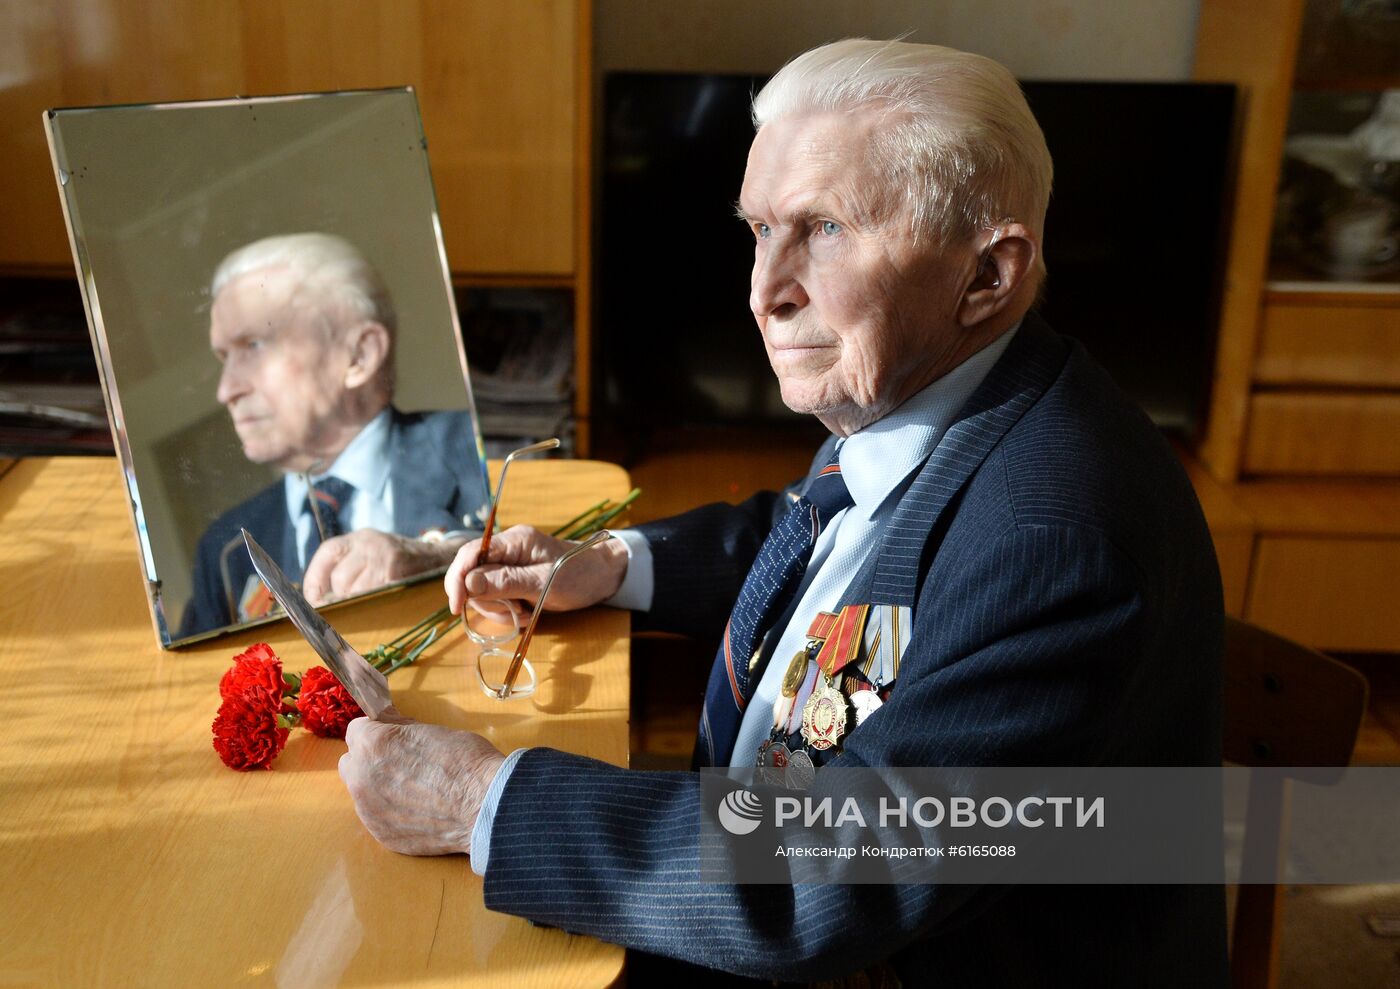 Ветеран Великой Отечественной войны В. Ф. Николаев